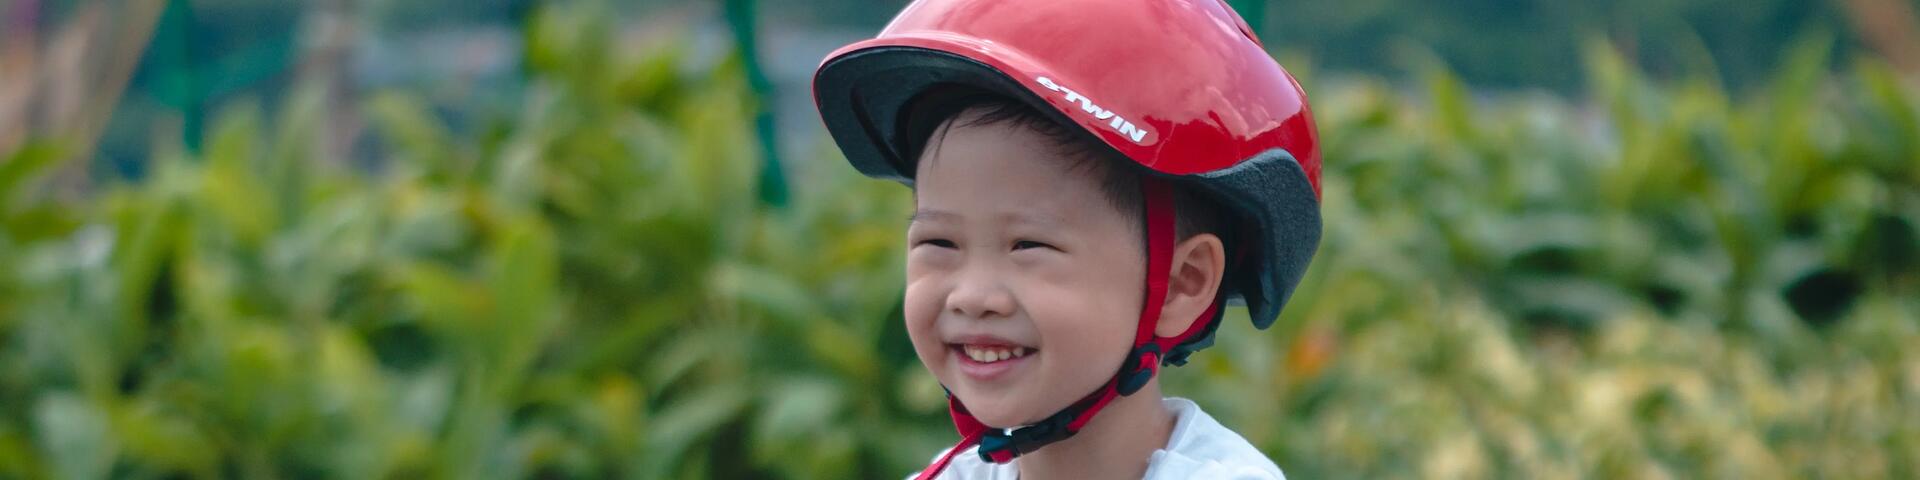 Skeeleren en fietsen: welke bescherming kies je voor je kinderen?